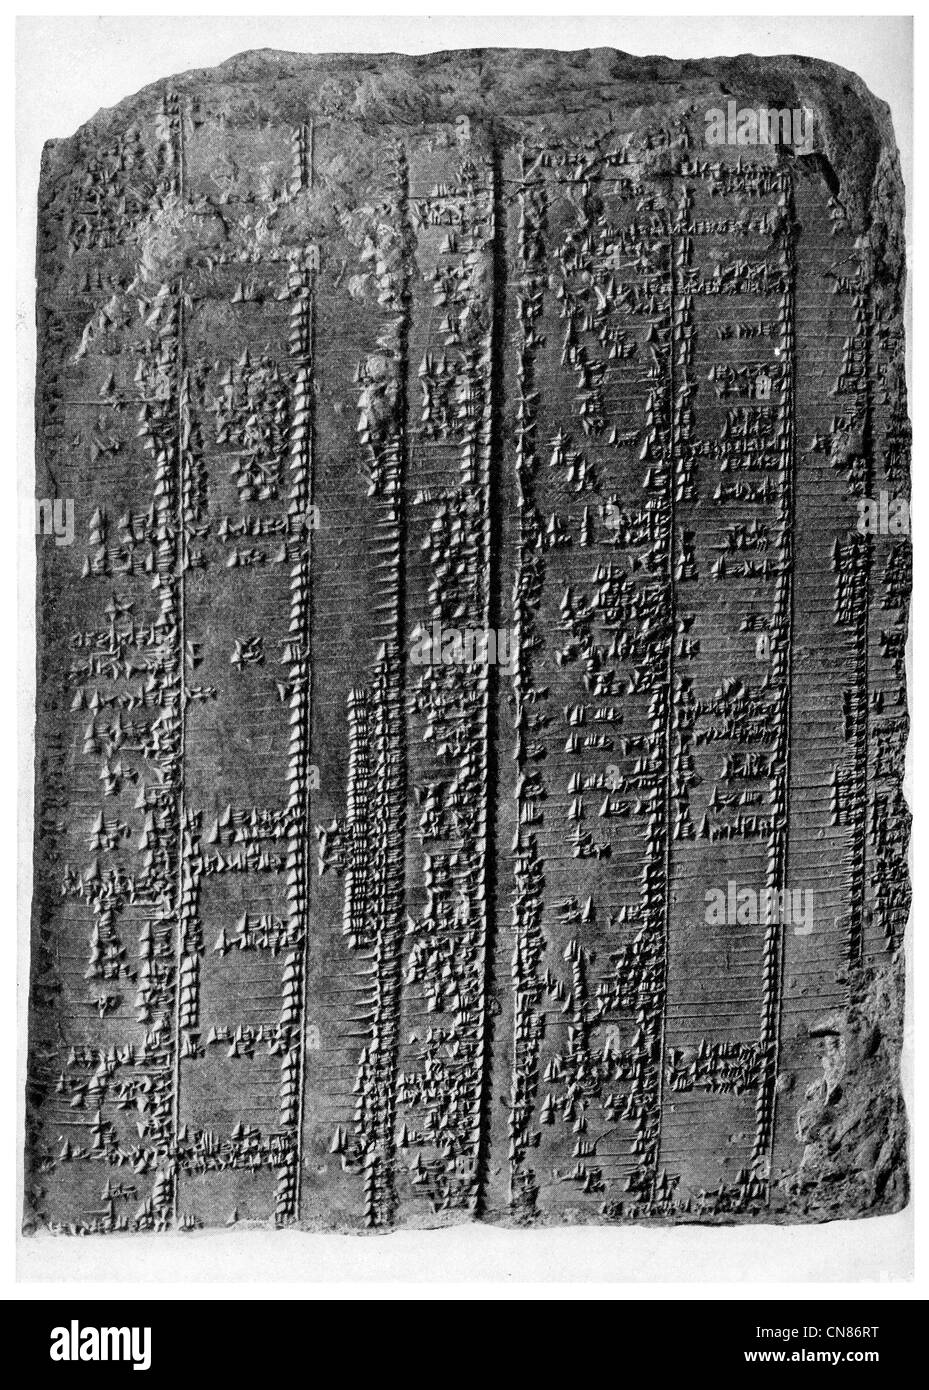 Publicado por primera vez en 1916 diccionario de texto Sumeria Babilonia del año 5000 Foto de stock